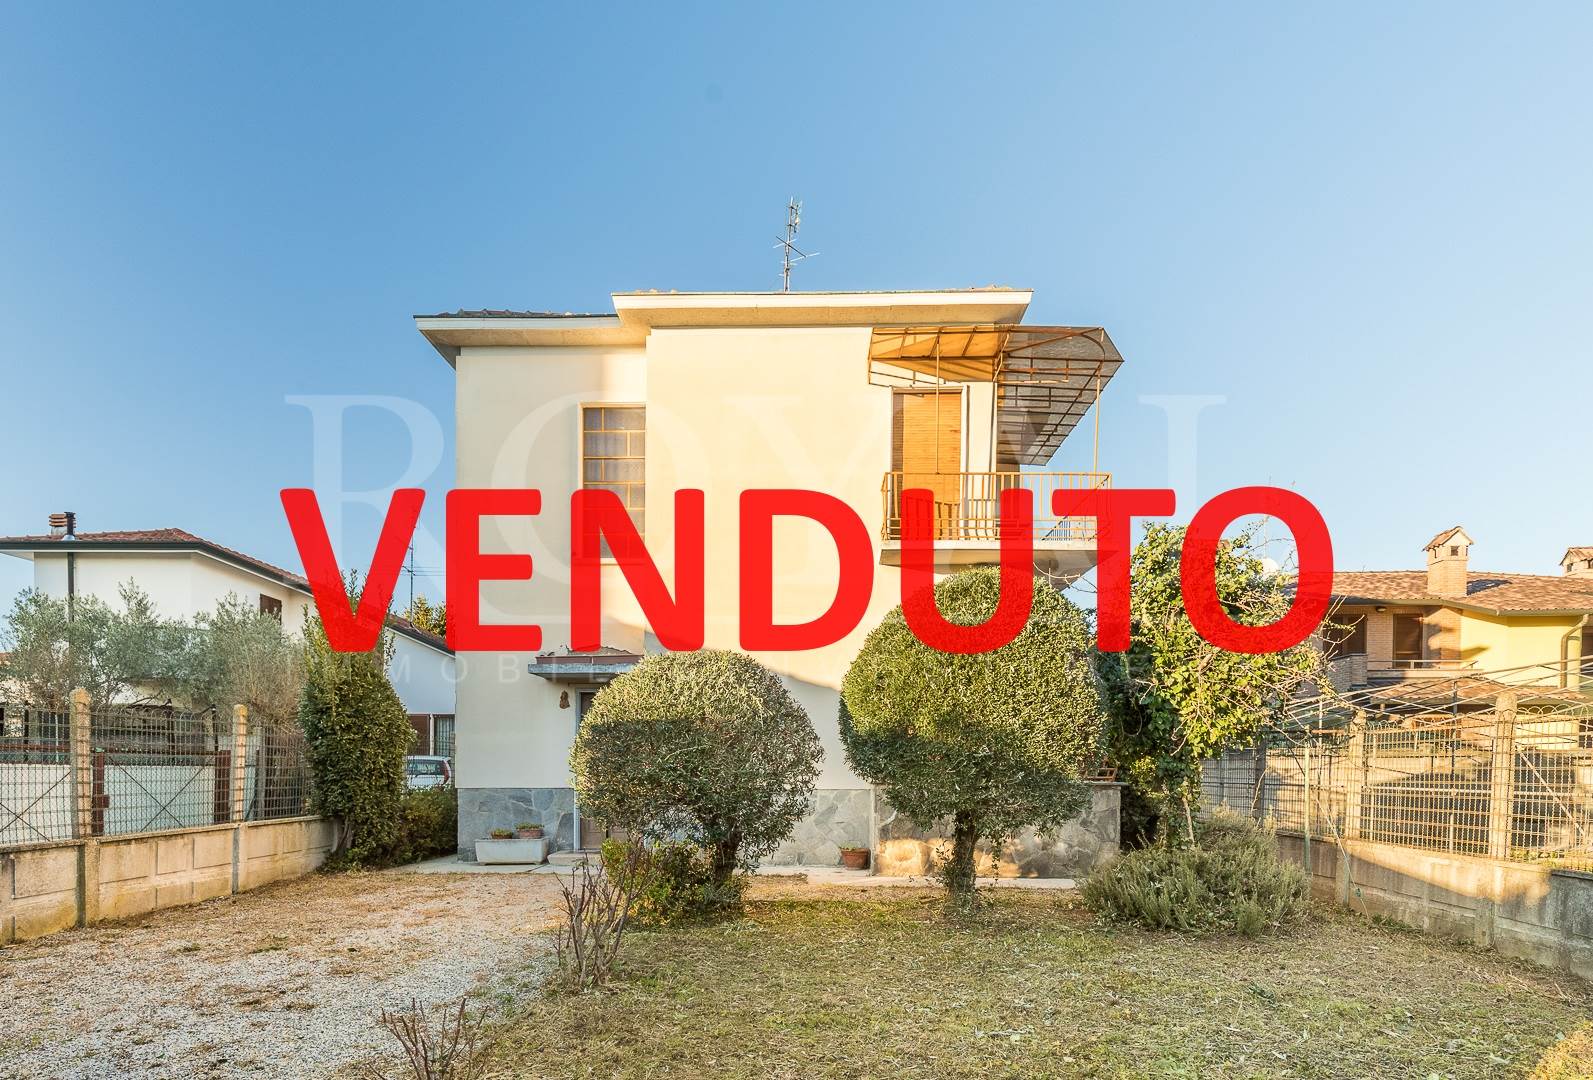 Villa in vendita a Vedano al Lambro, 6 locali, prezzo € 460.000 | PortaleAgenzieImmobiliari.it